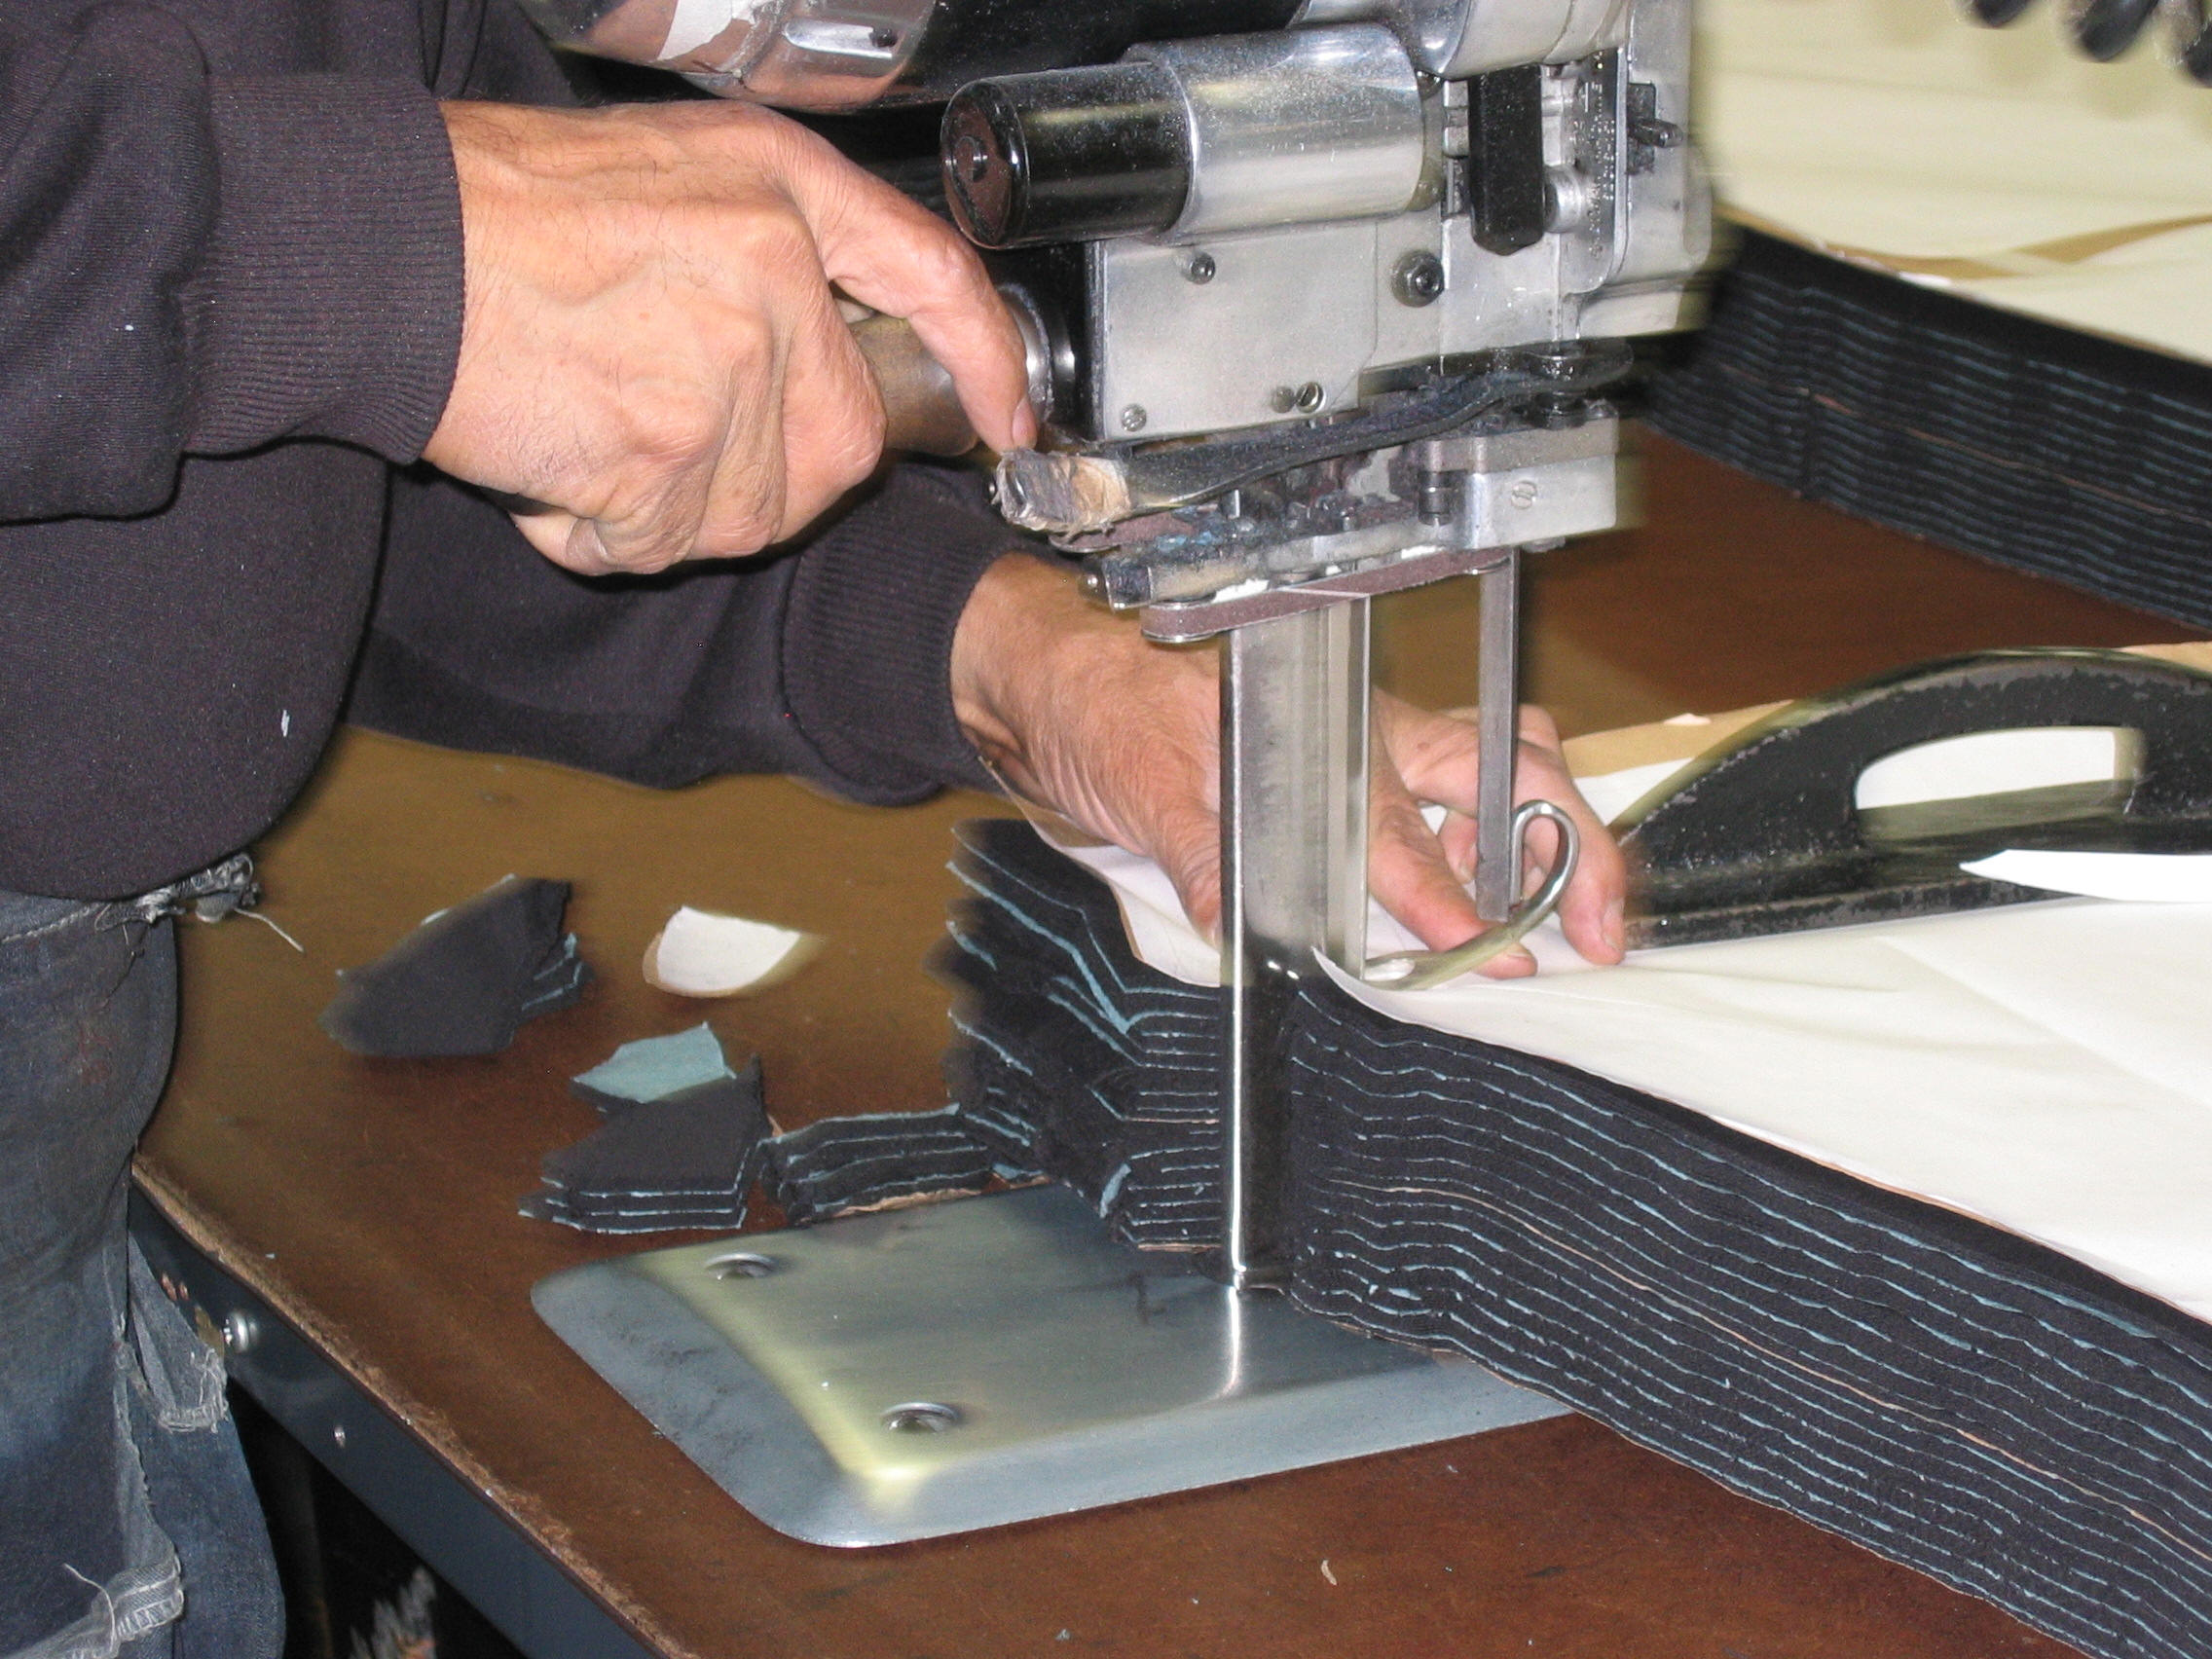 Fabric Cutting Machine